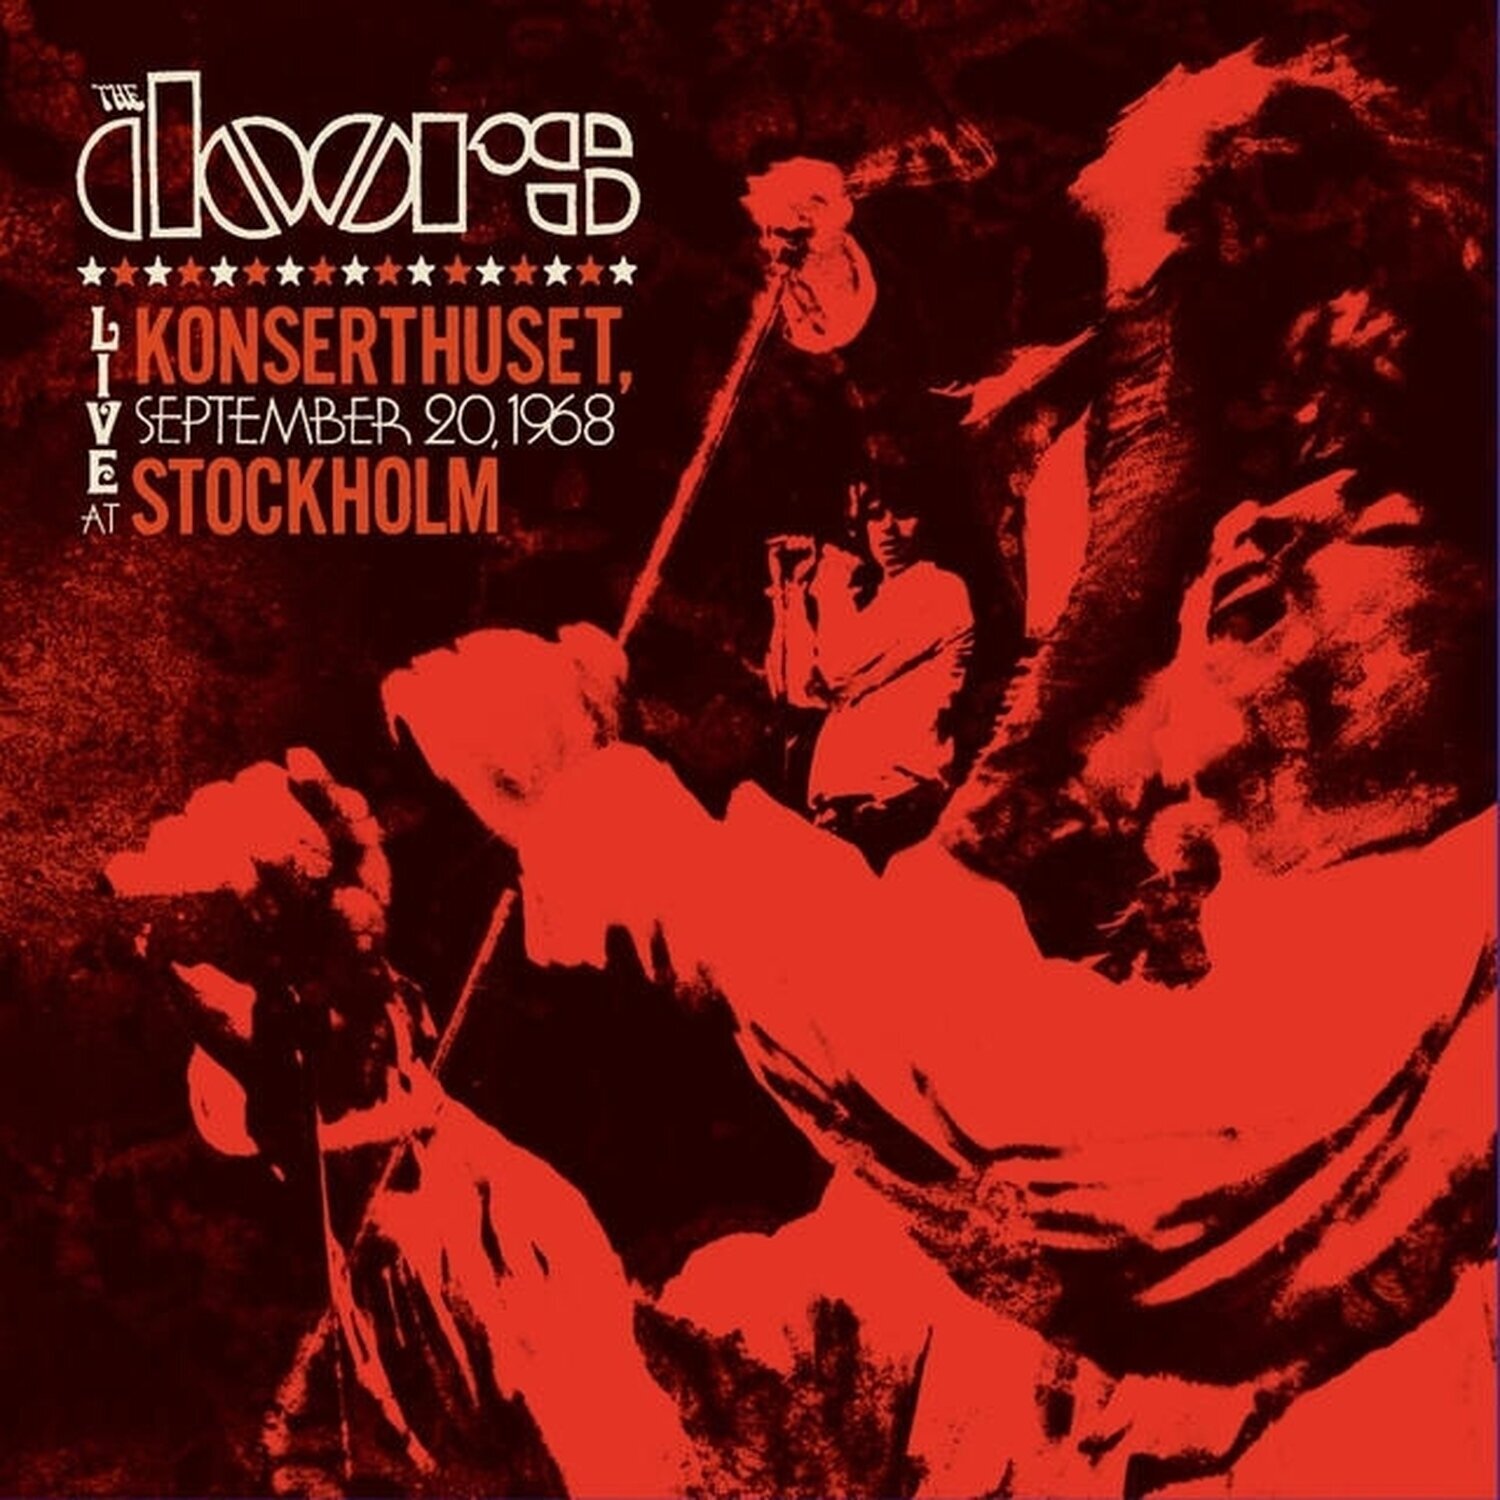 Music CD The Doors - Live At Konserthuset, Stockholm, 1968 (Rsd 2024) (2 CD)